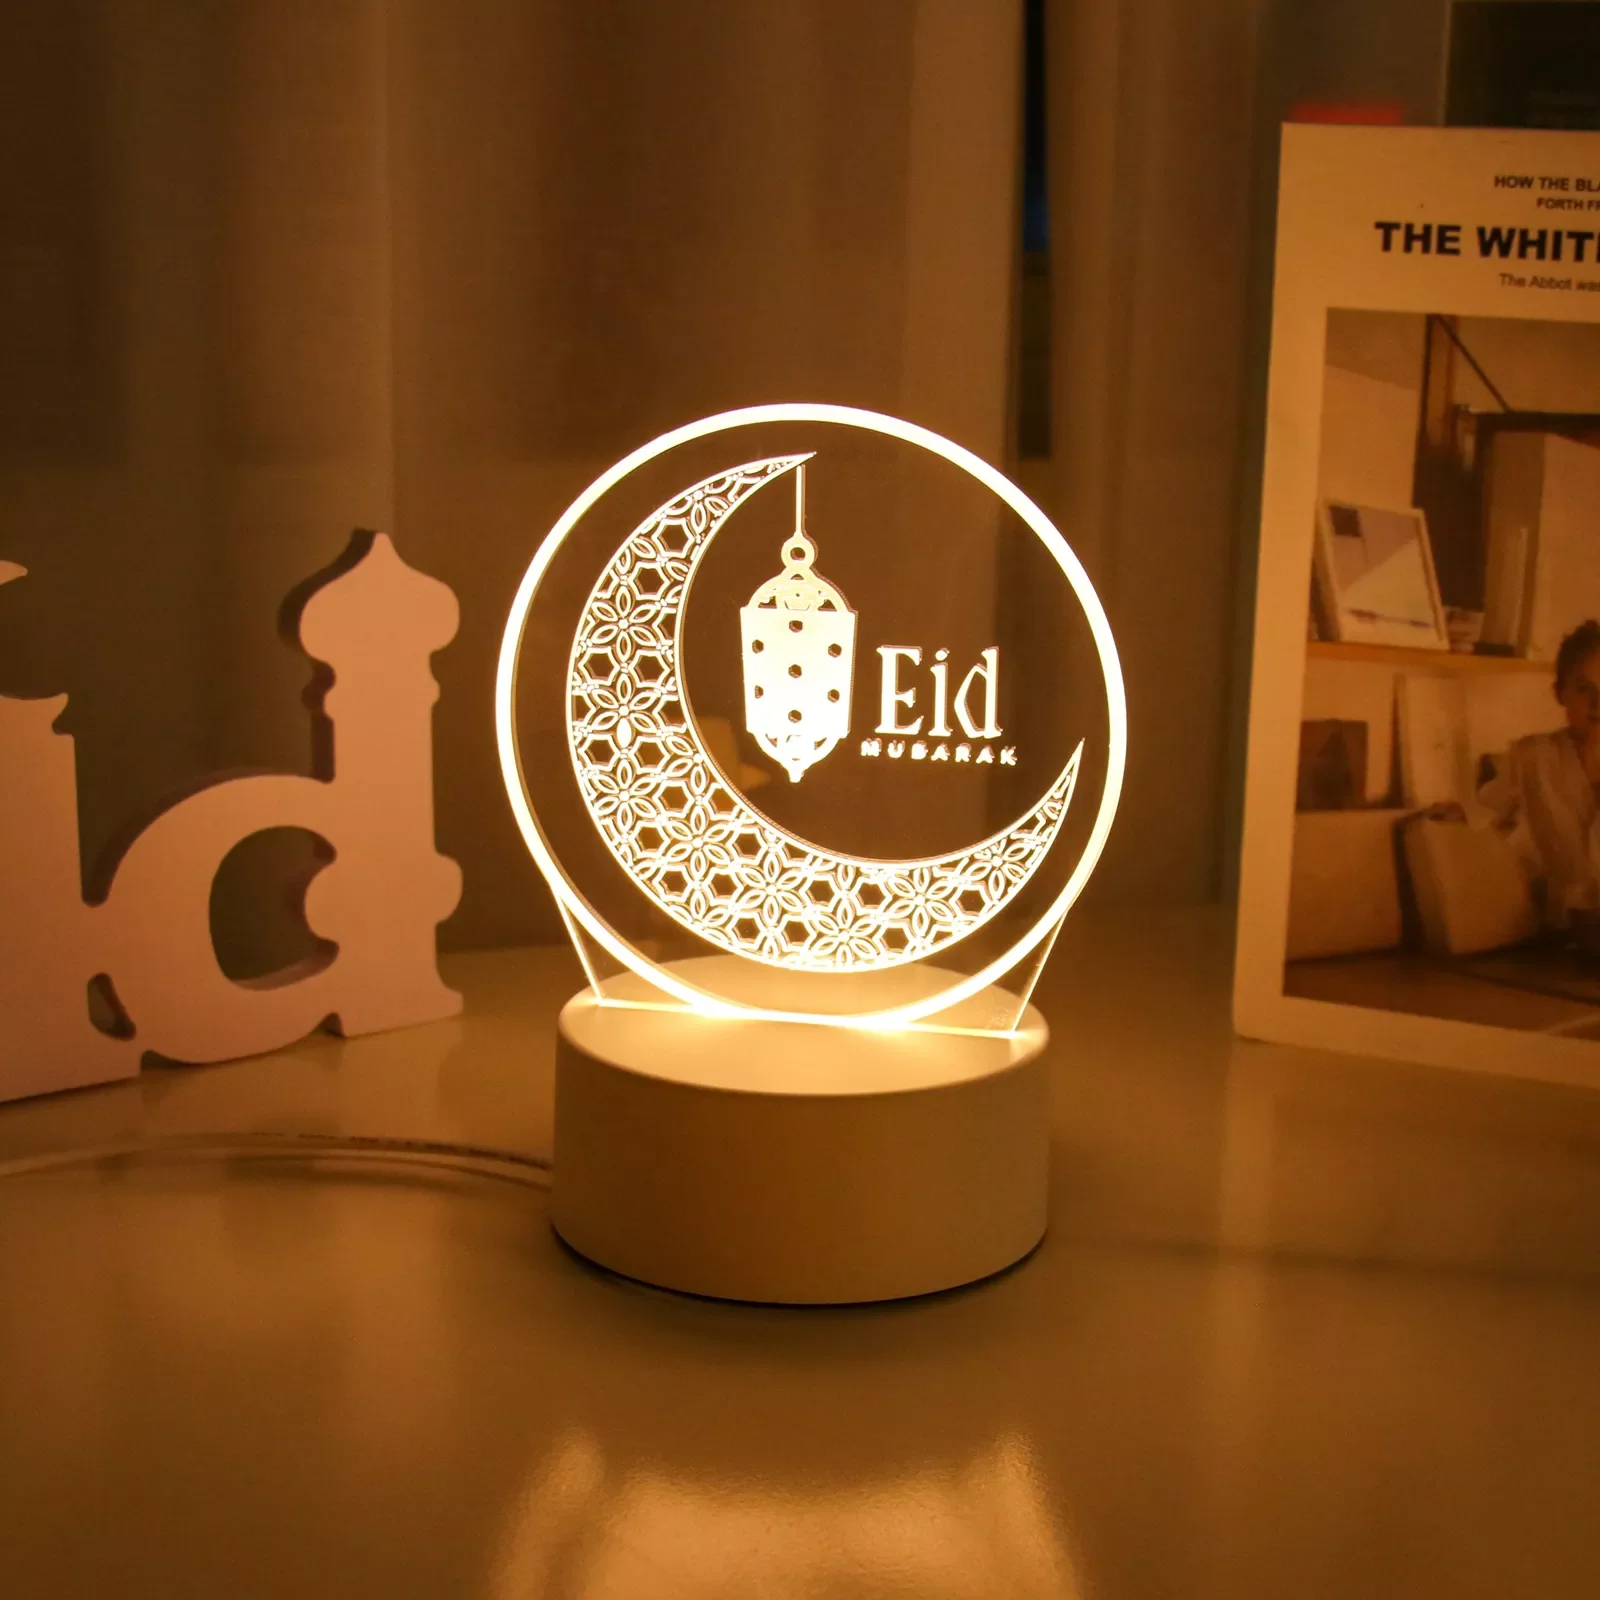 

EID Night светильник EID Mubarak украшения на Рамадан для домашнего мусульманского декора для вечеринки Eid Al Adha Рамадан и Рамадан Eid Kareem